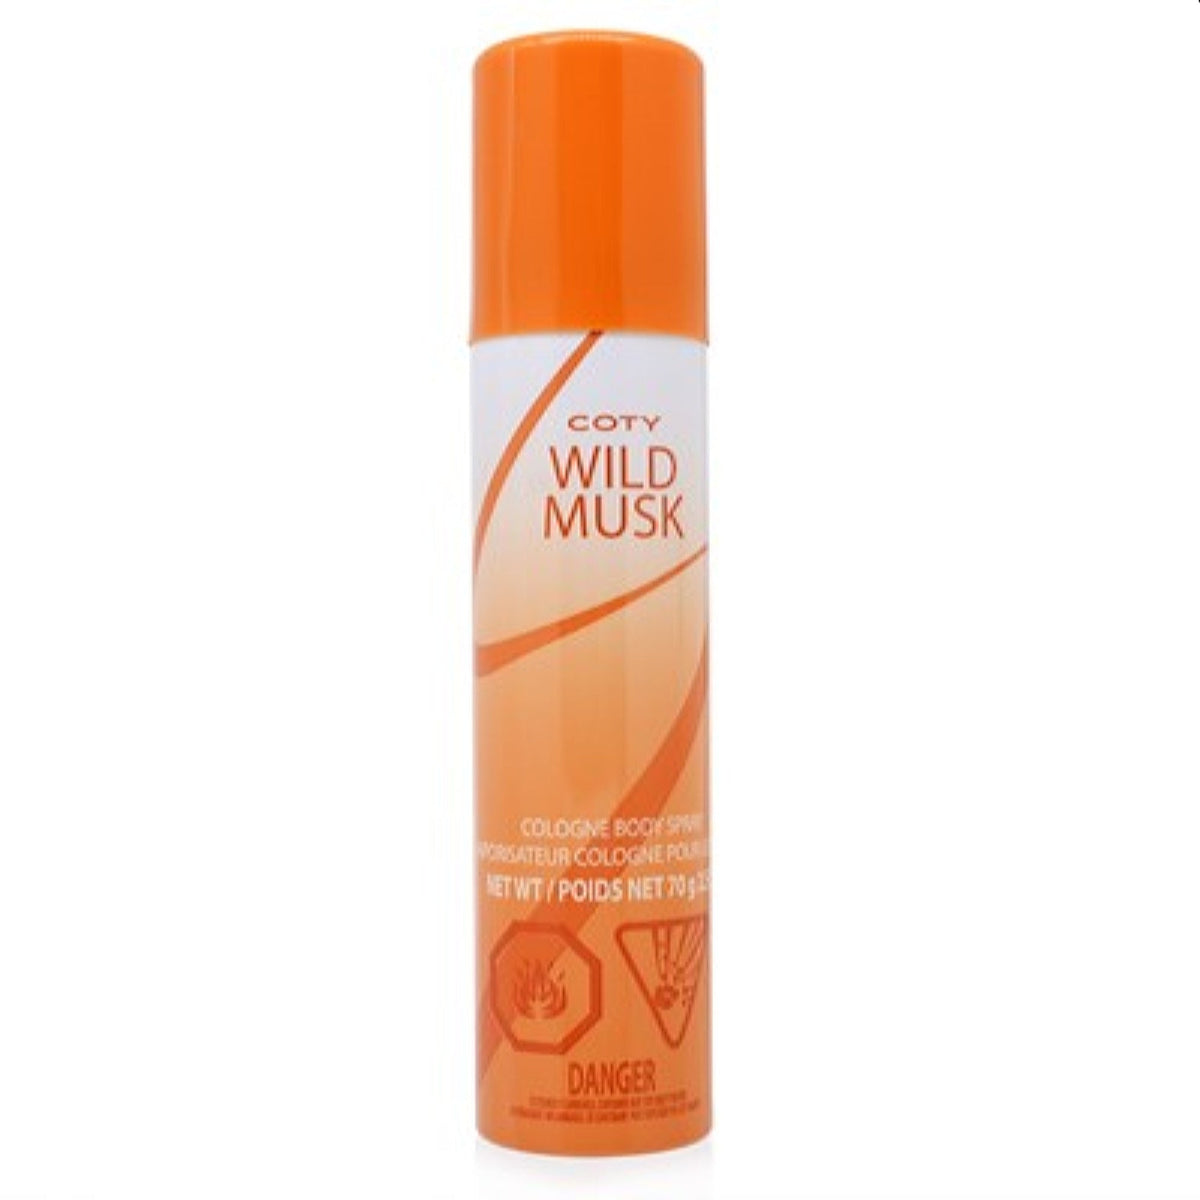 Coty Wild Musk Coty Body Spray 2.5 Oz (70 Ml) For Women   